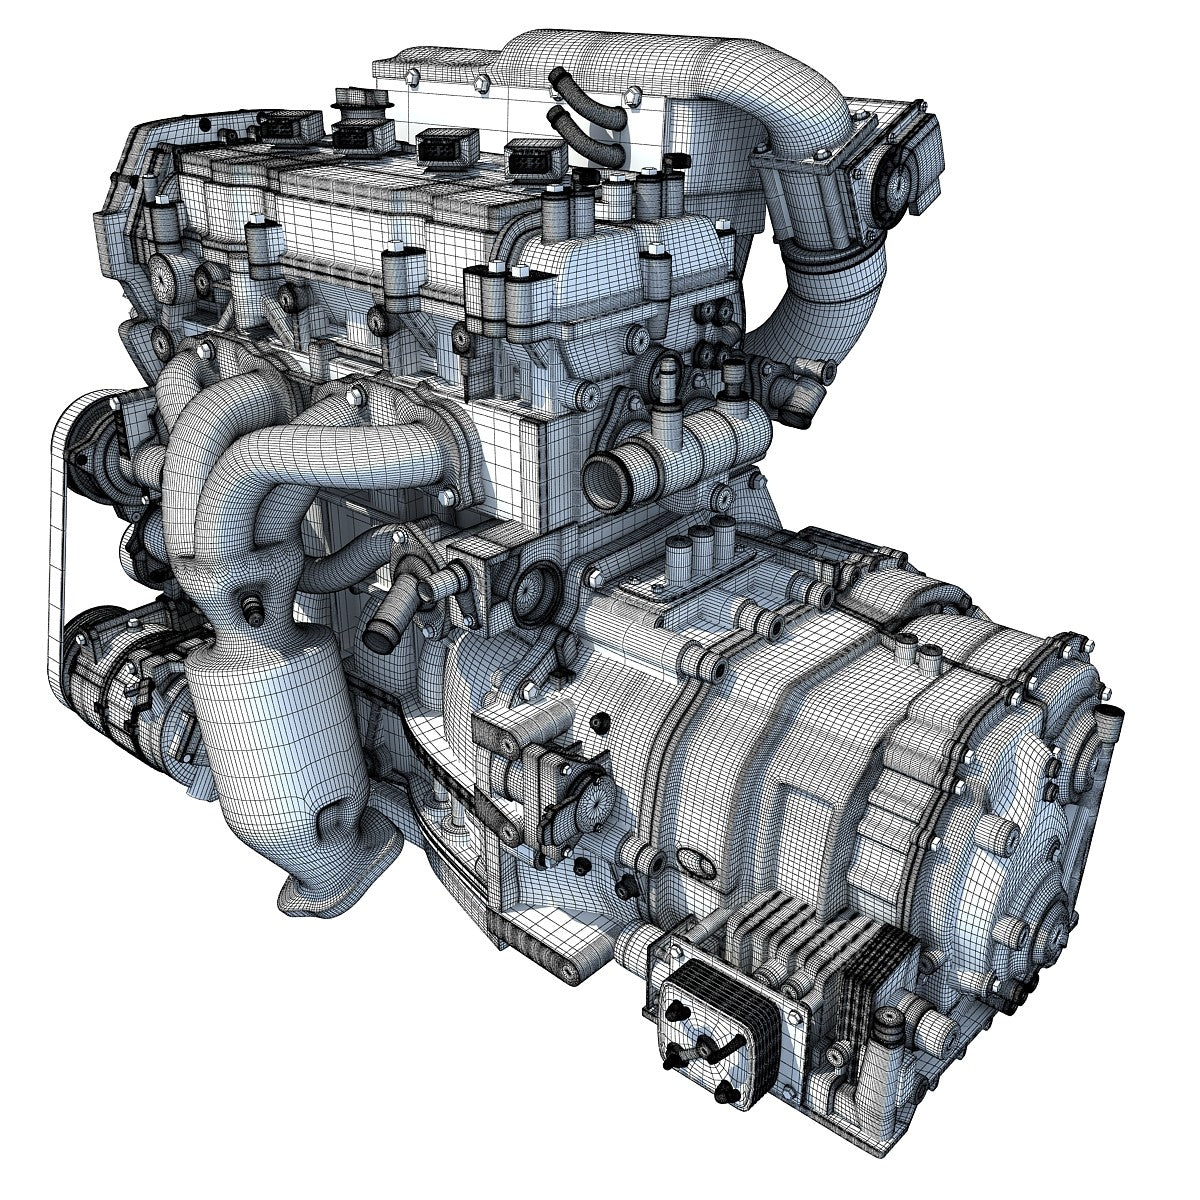 3D Engine Nissan Model